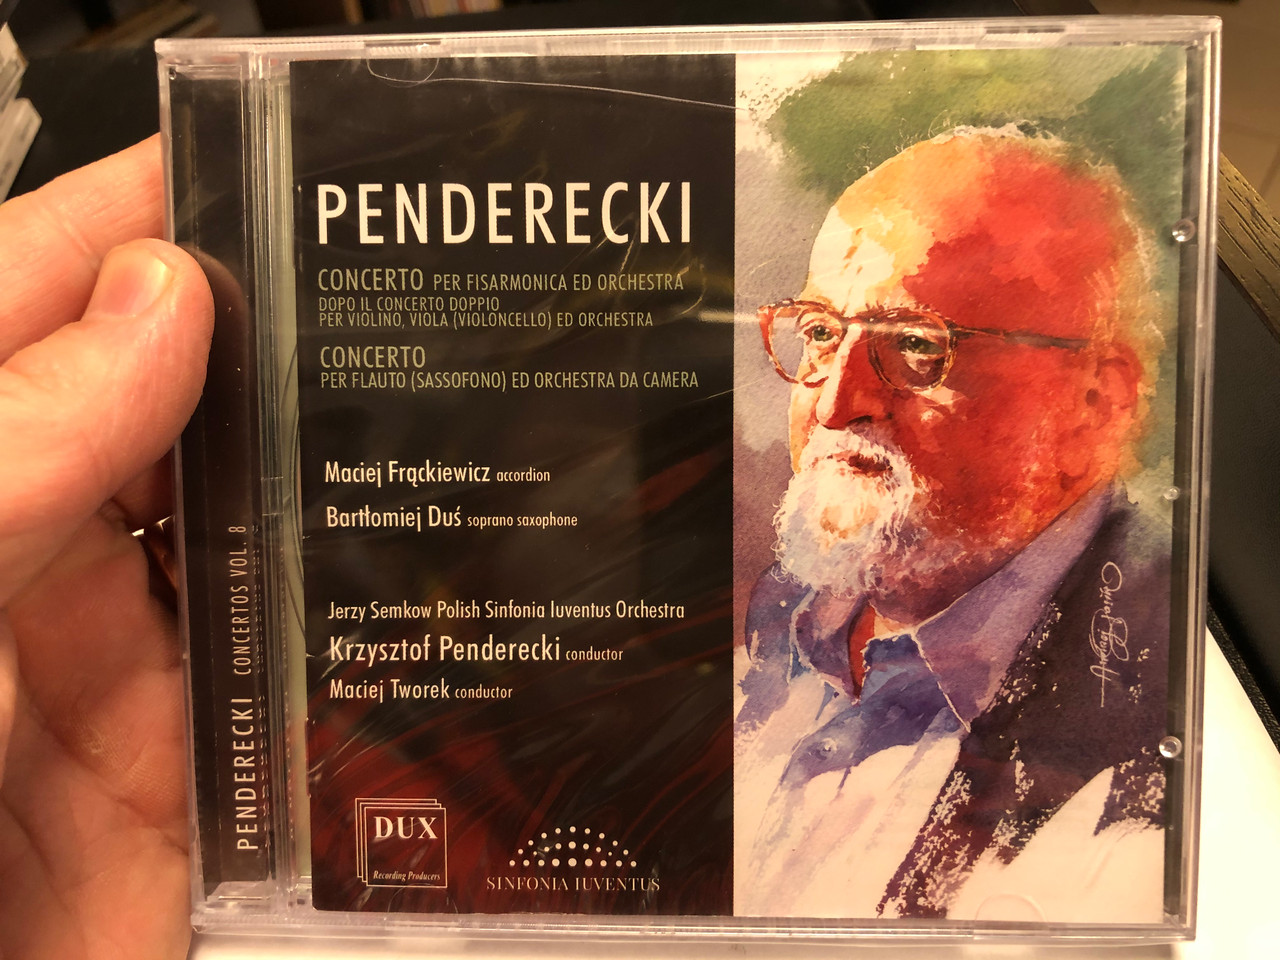 Penderecki - Concerto Per Fisarmonica Ed Orchestra dopo il Concerto doppio  per violin, viola (violoncello) ed orchestra;